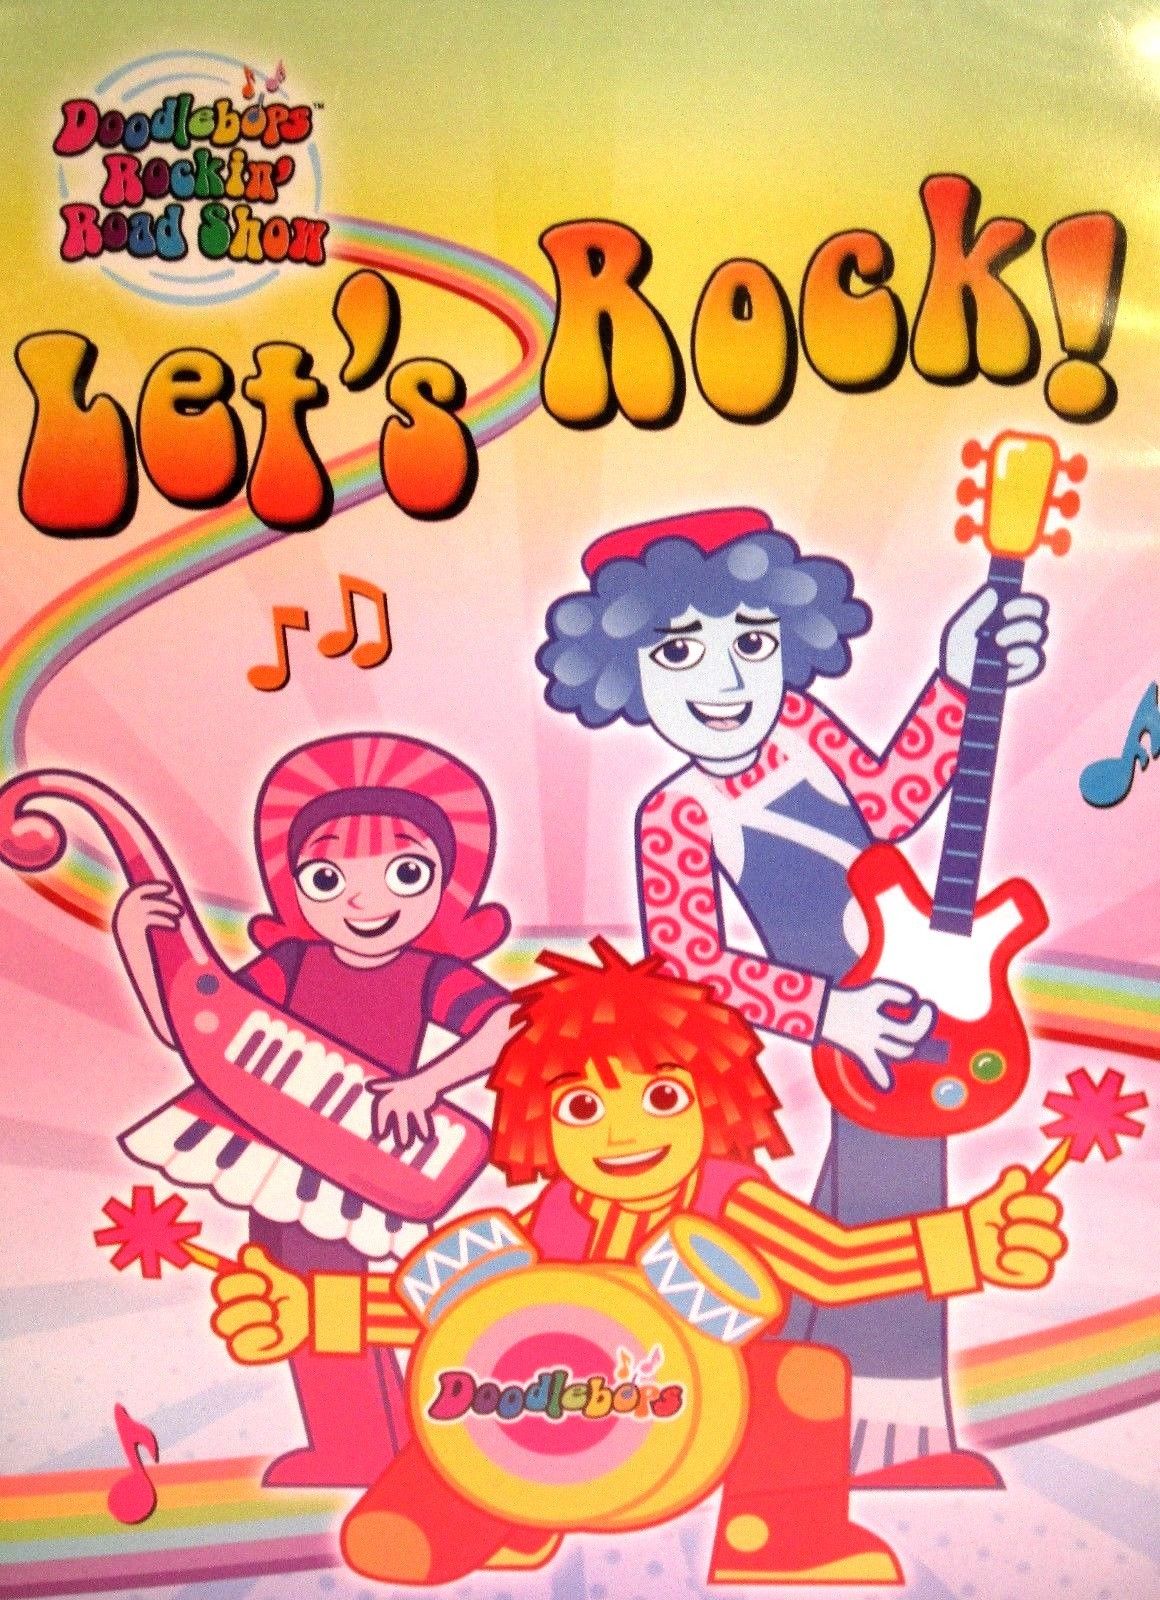 Stek Shop Doodle Bops Rockin Road Show Let S Rock New Dvd